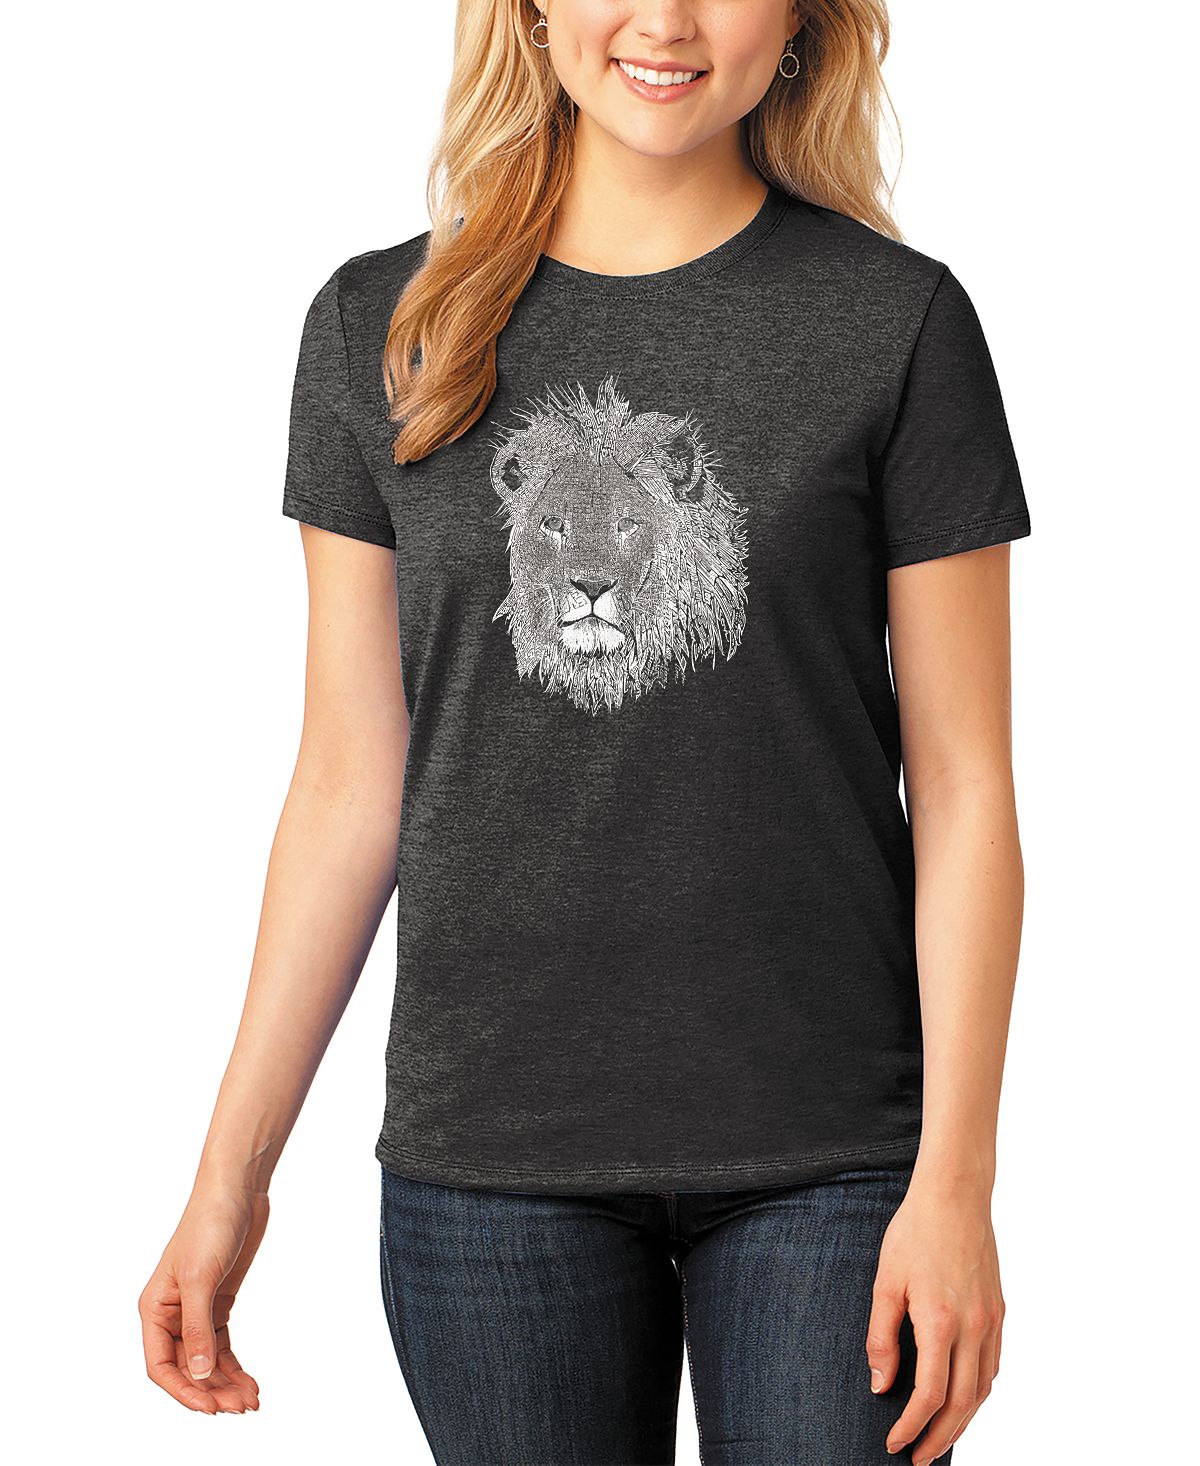 Женская футболка premium blend word art lion LA Pop Art, черный женская футболка с изображением санта клауса premium blend word art la pop art черный